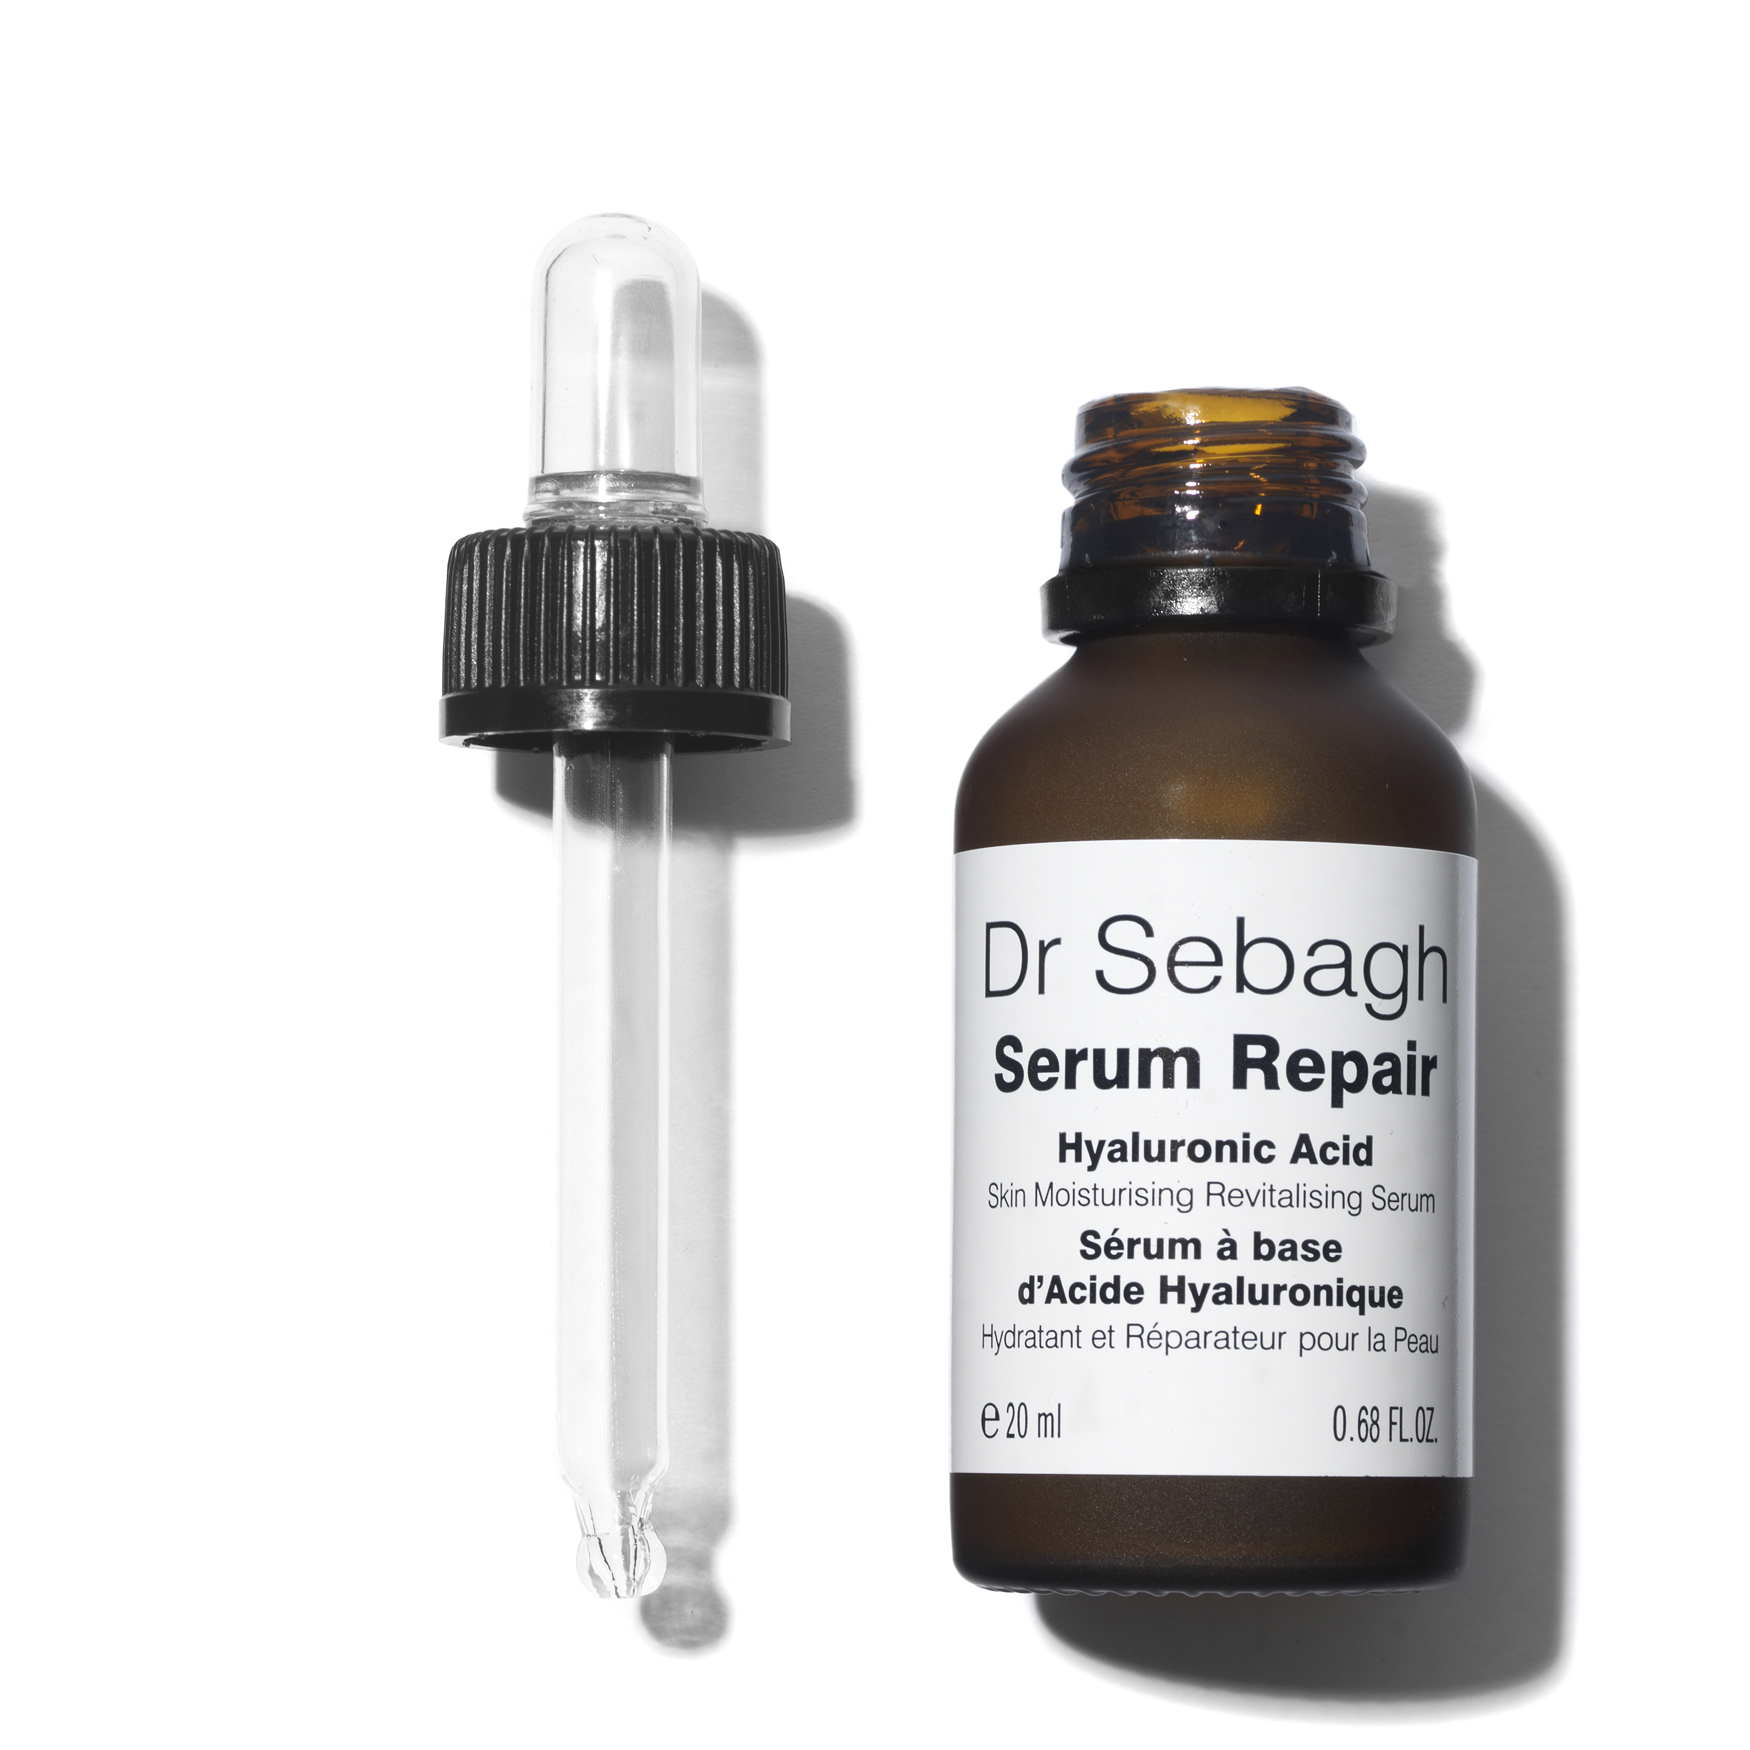 Serum Repair - Dr Sebagh | Space NK